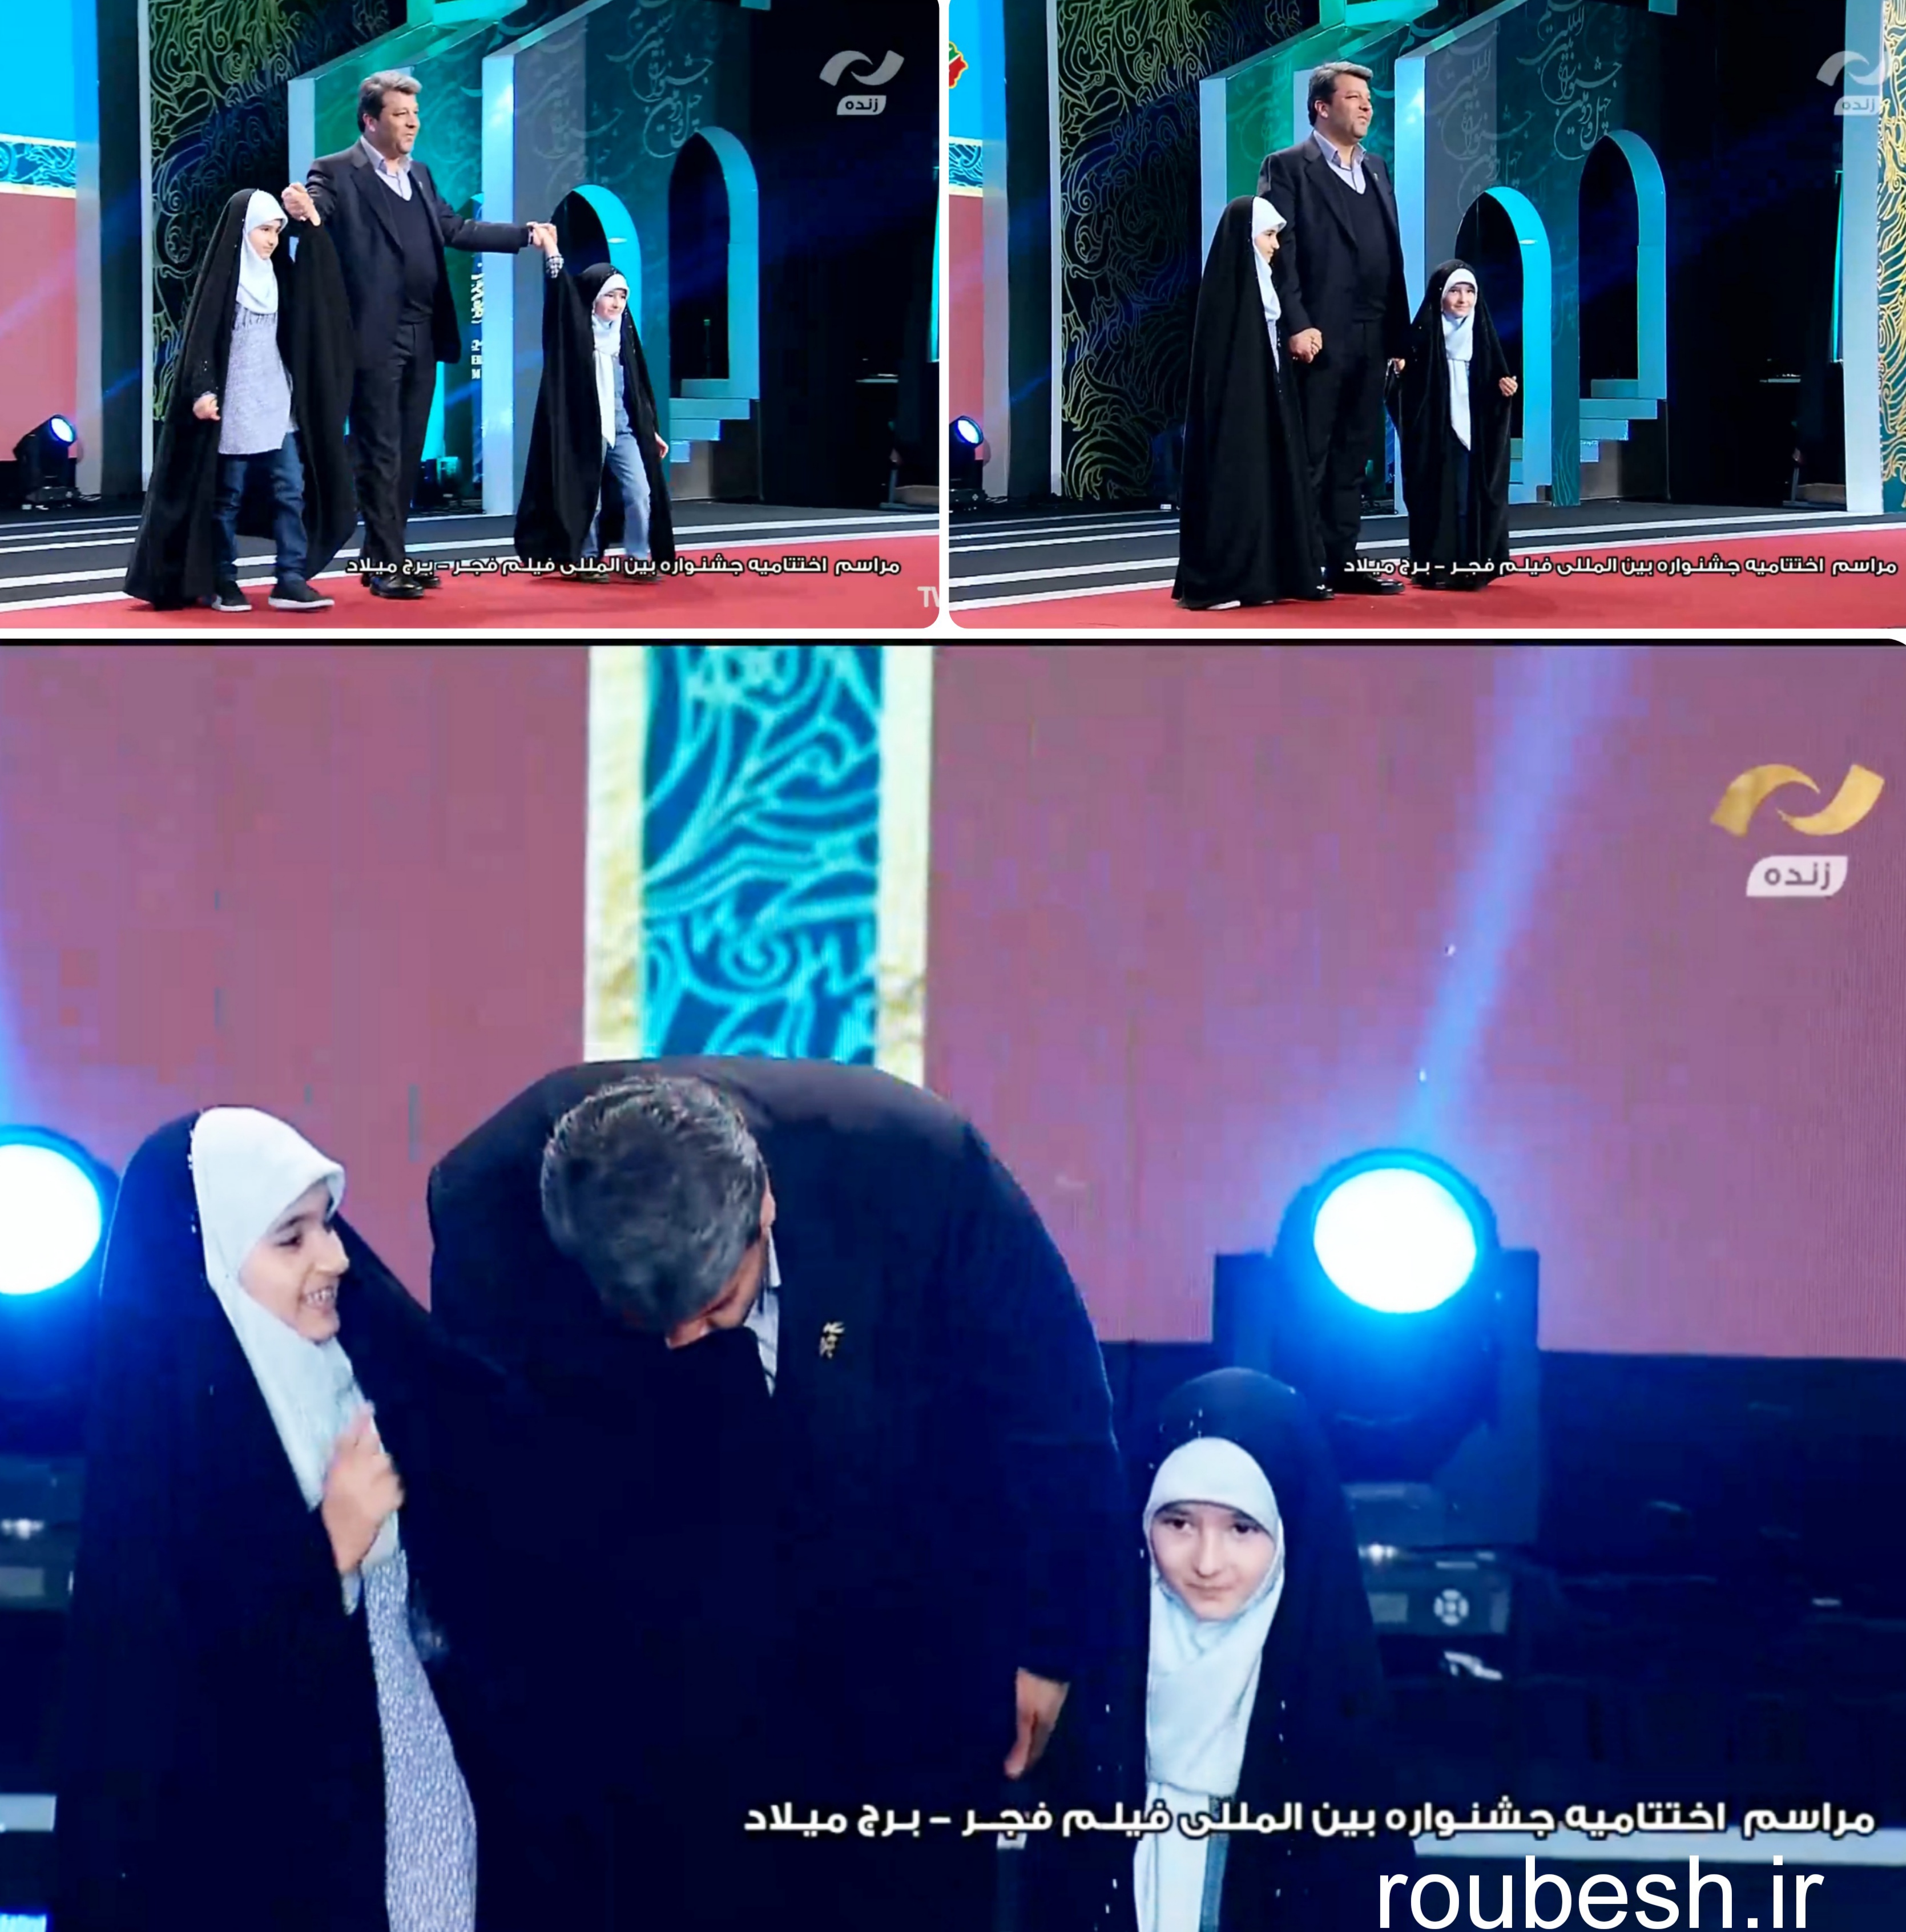 بوسه محمد خزاعی رئیس سازمان سینمایی به چادر و روسری دخترانش.